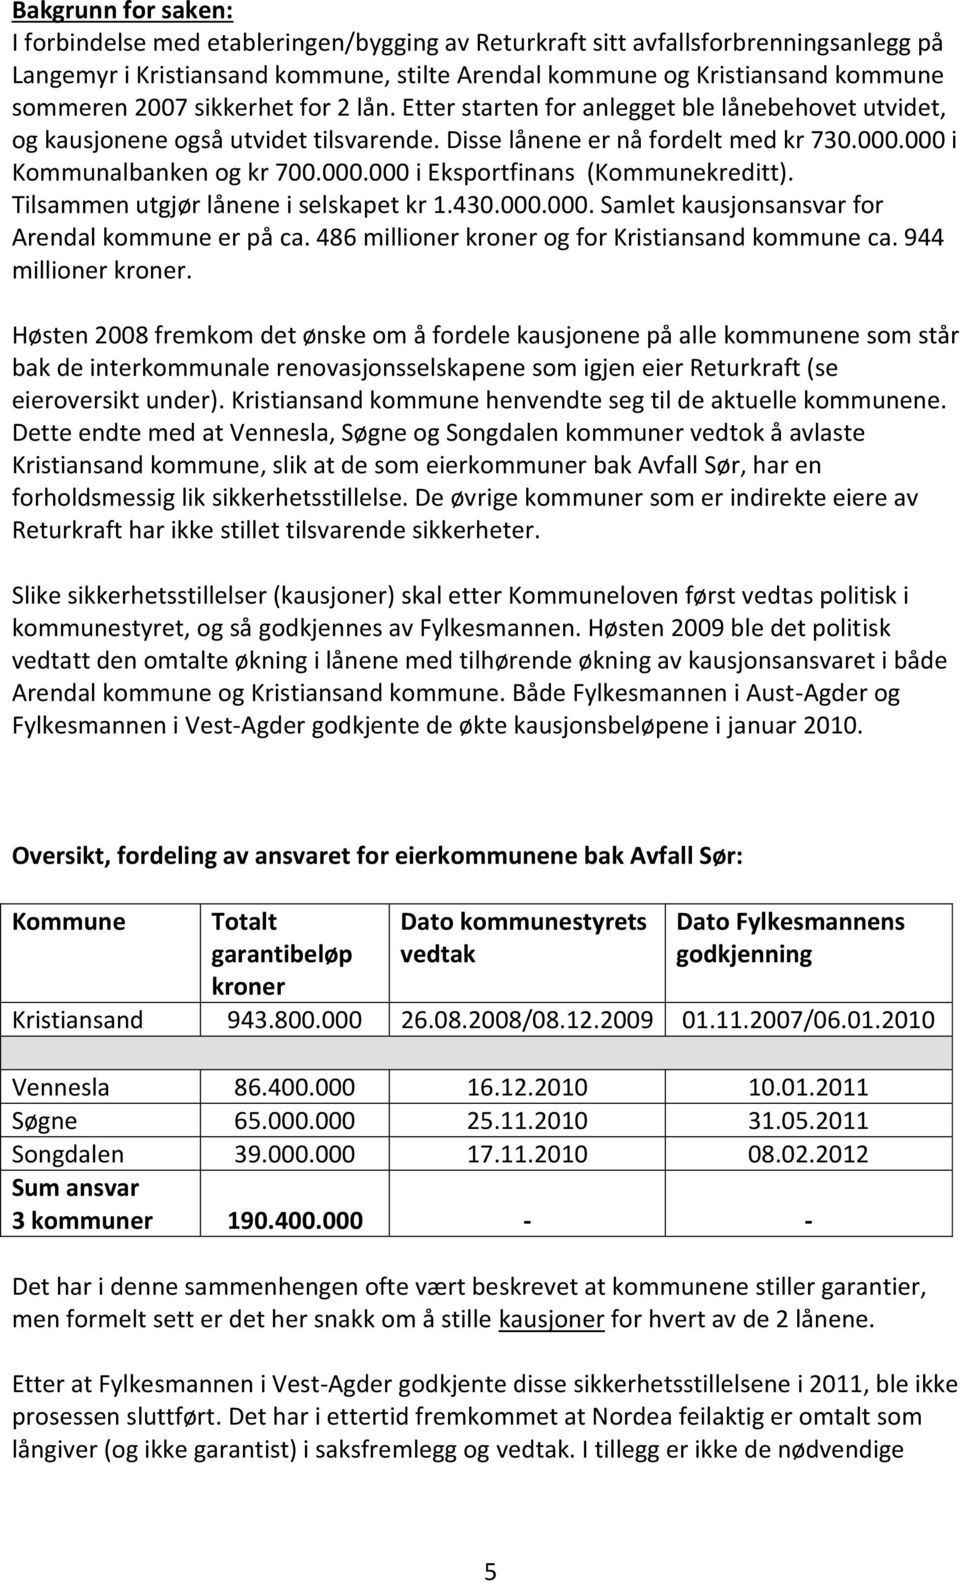 Tilsammen utgjør lånene i selskapet kr 1.430.000.000. Samlet kausjonsansvar for Arendal kommune er på ca. 486 millioner kroner og for Kristiansand kommune ca. 944 millioner kroner.